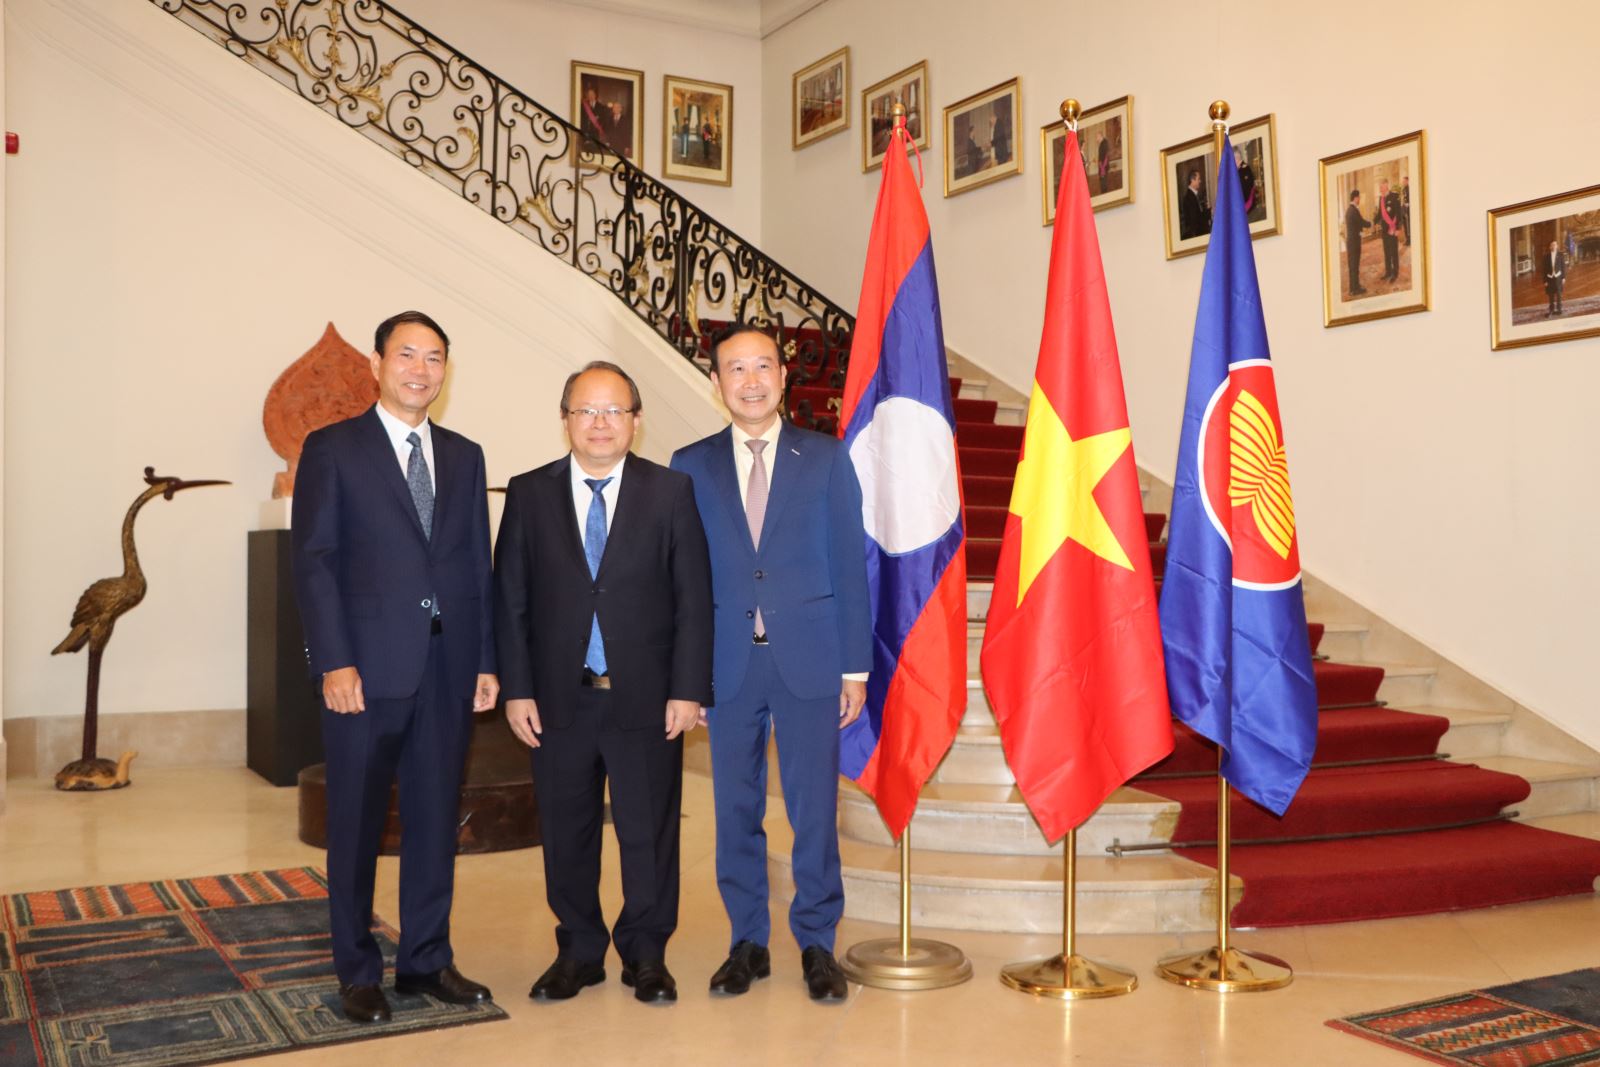 Giao lưu Việt - Lào tại Bỉ nhân kỷ niệm 60 năm Quan hệ ngoại giao Việt Nam - Lào